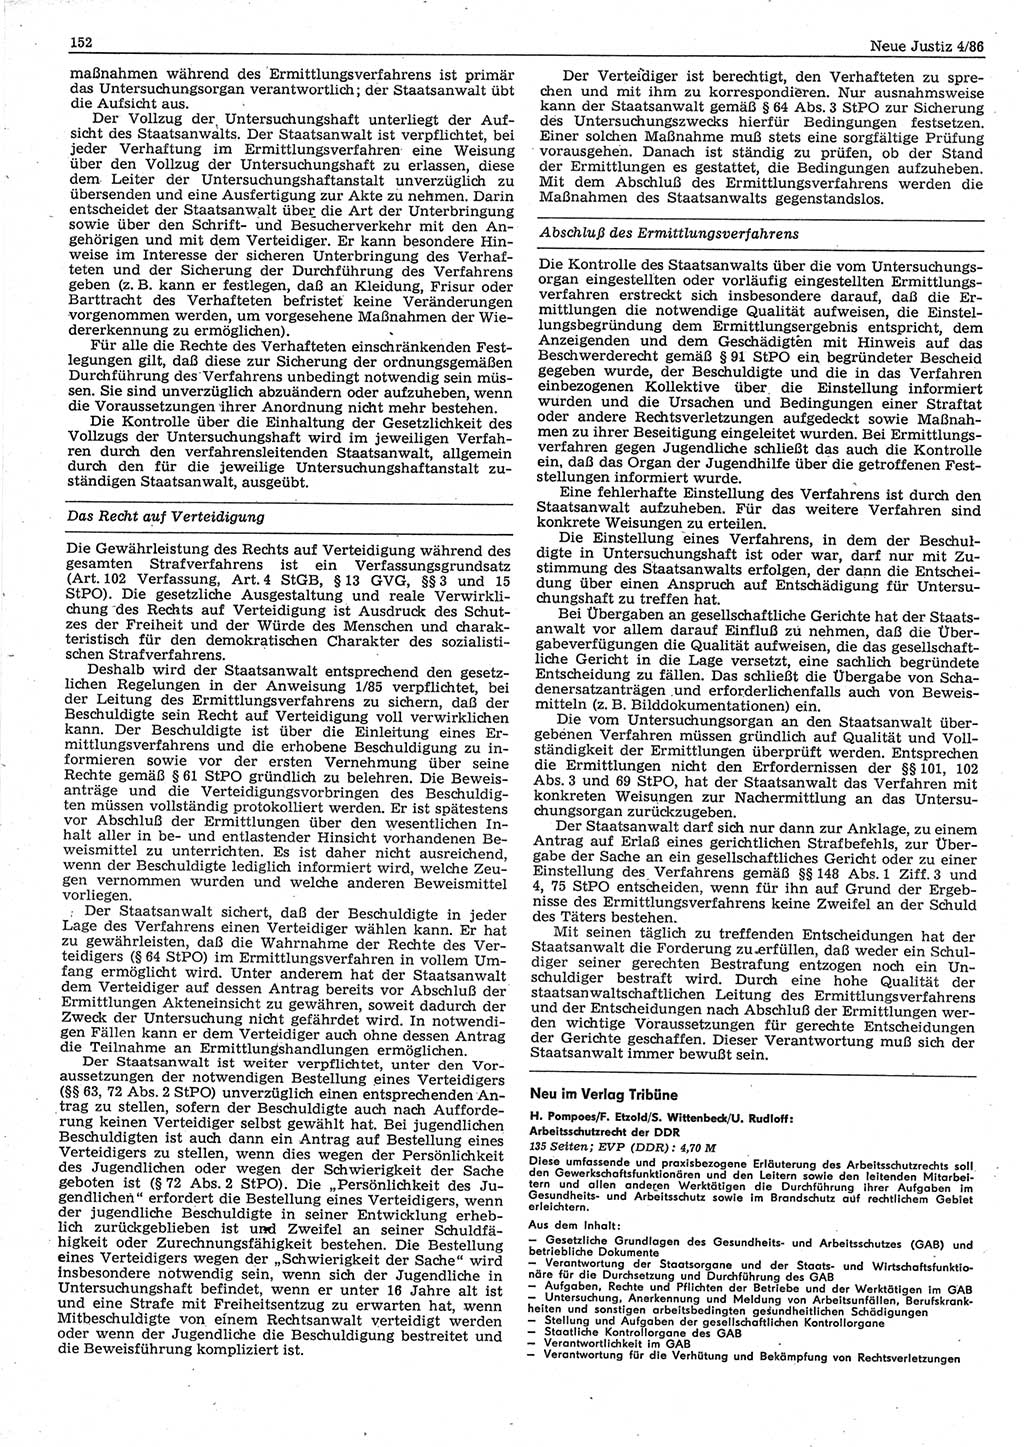 Neue Justiz (NJ), Zeitschrift für sozialistisches Recht und Gesetzlichkeit [Deutsche Demokratische Republik (DDR)], 40. Jahrgang 1986, Seite 152 (NJ DDR 1986, S. 152)